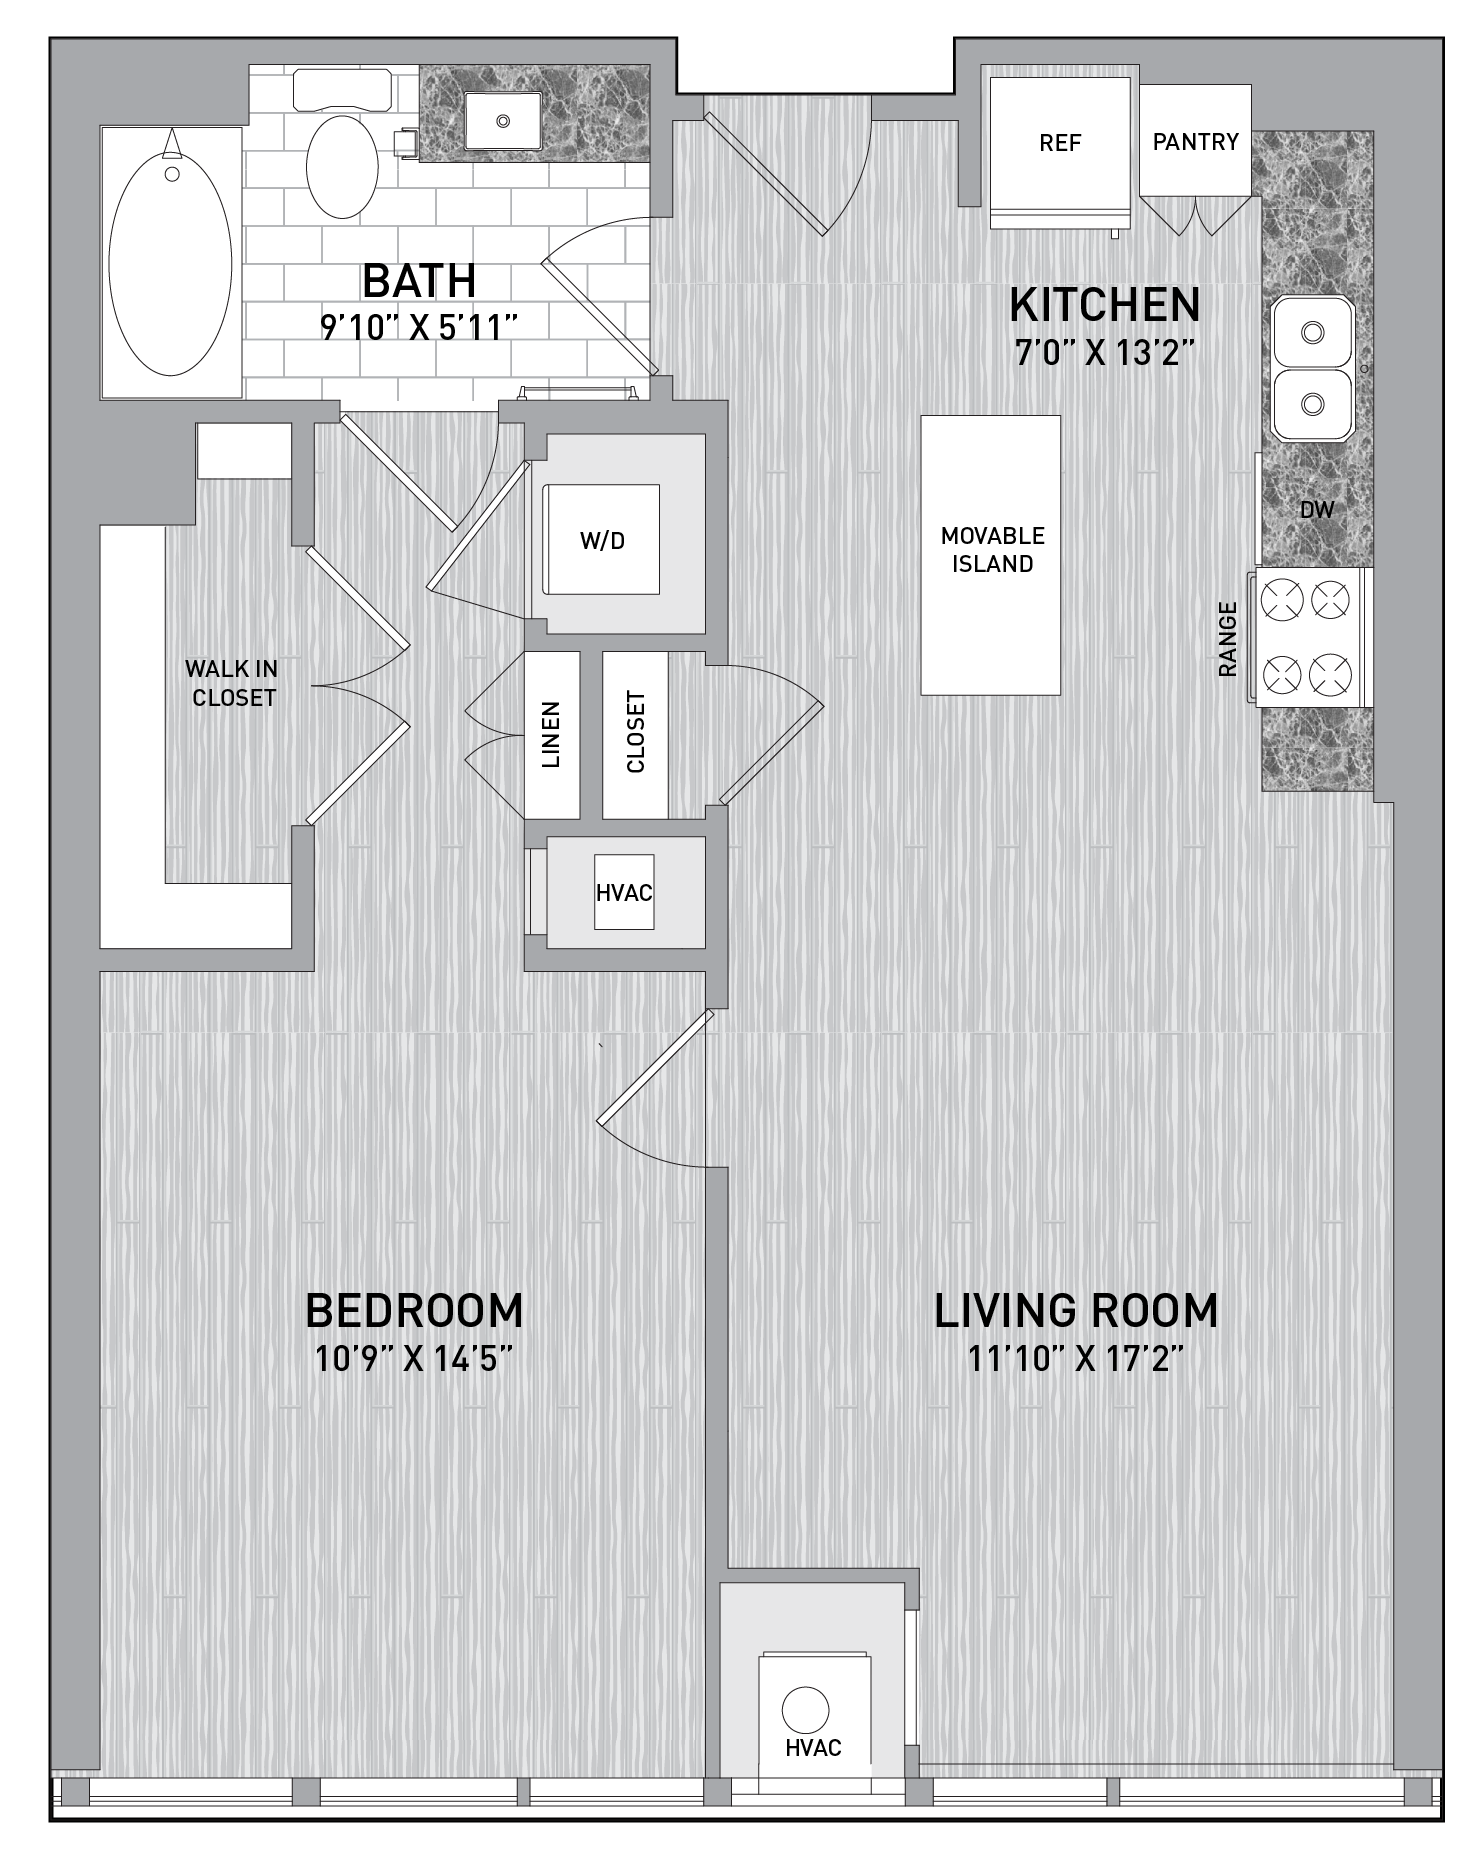 floorplan image of unit id 0414